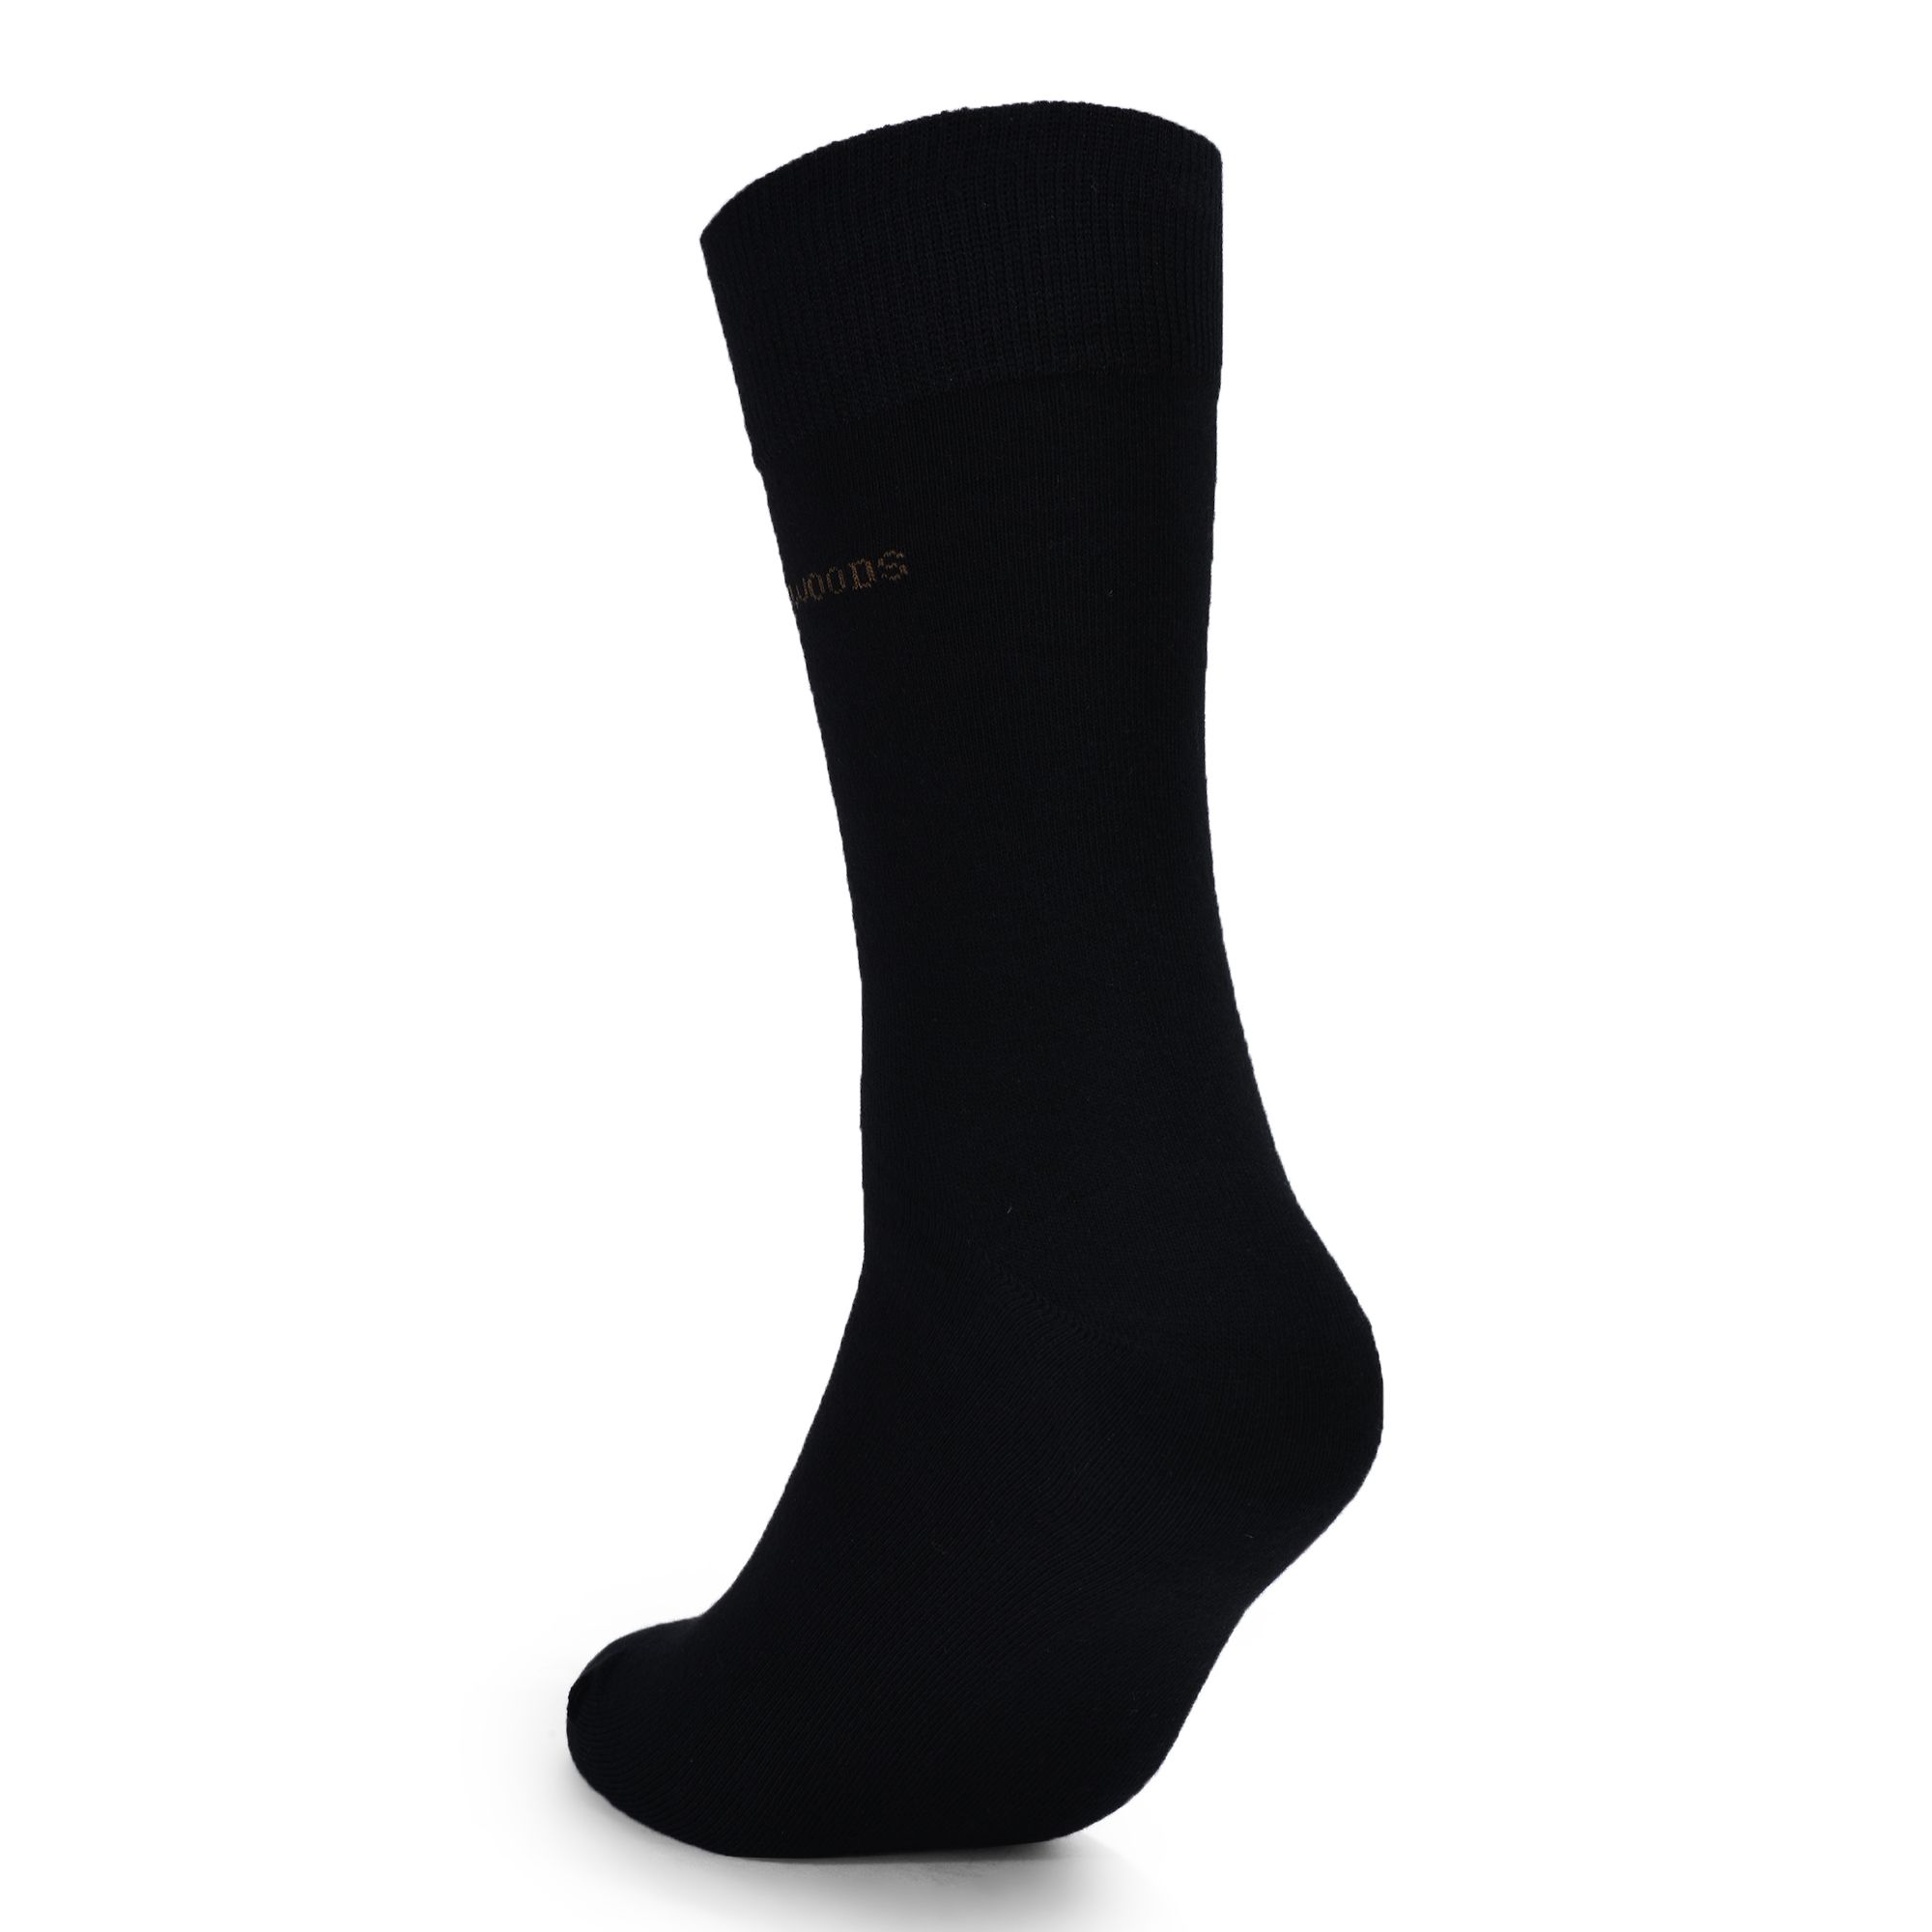 Black dress socks for men